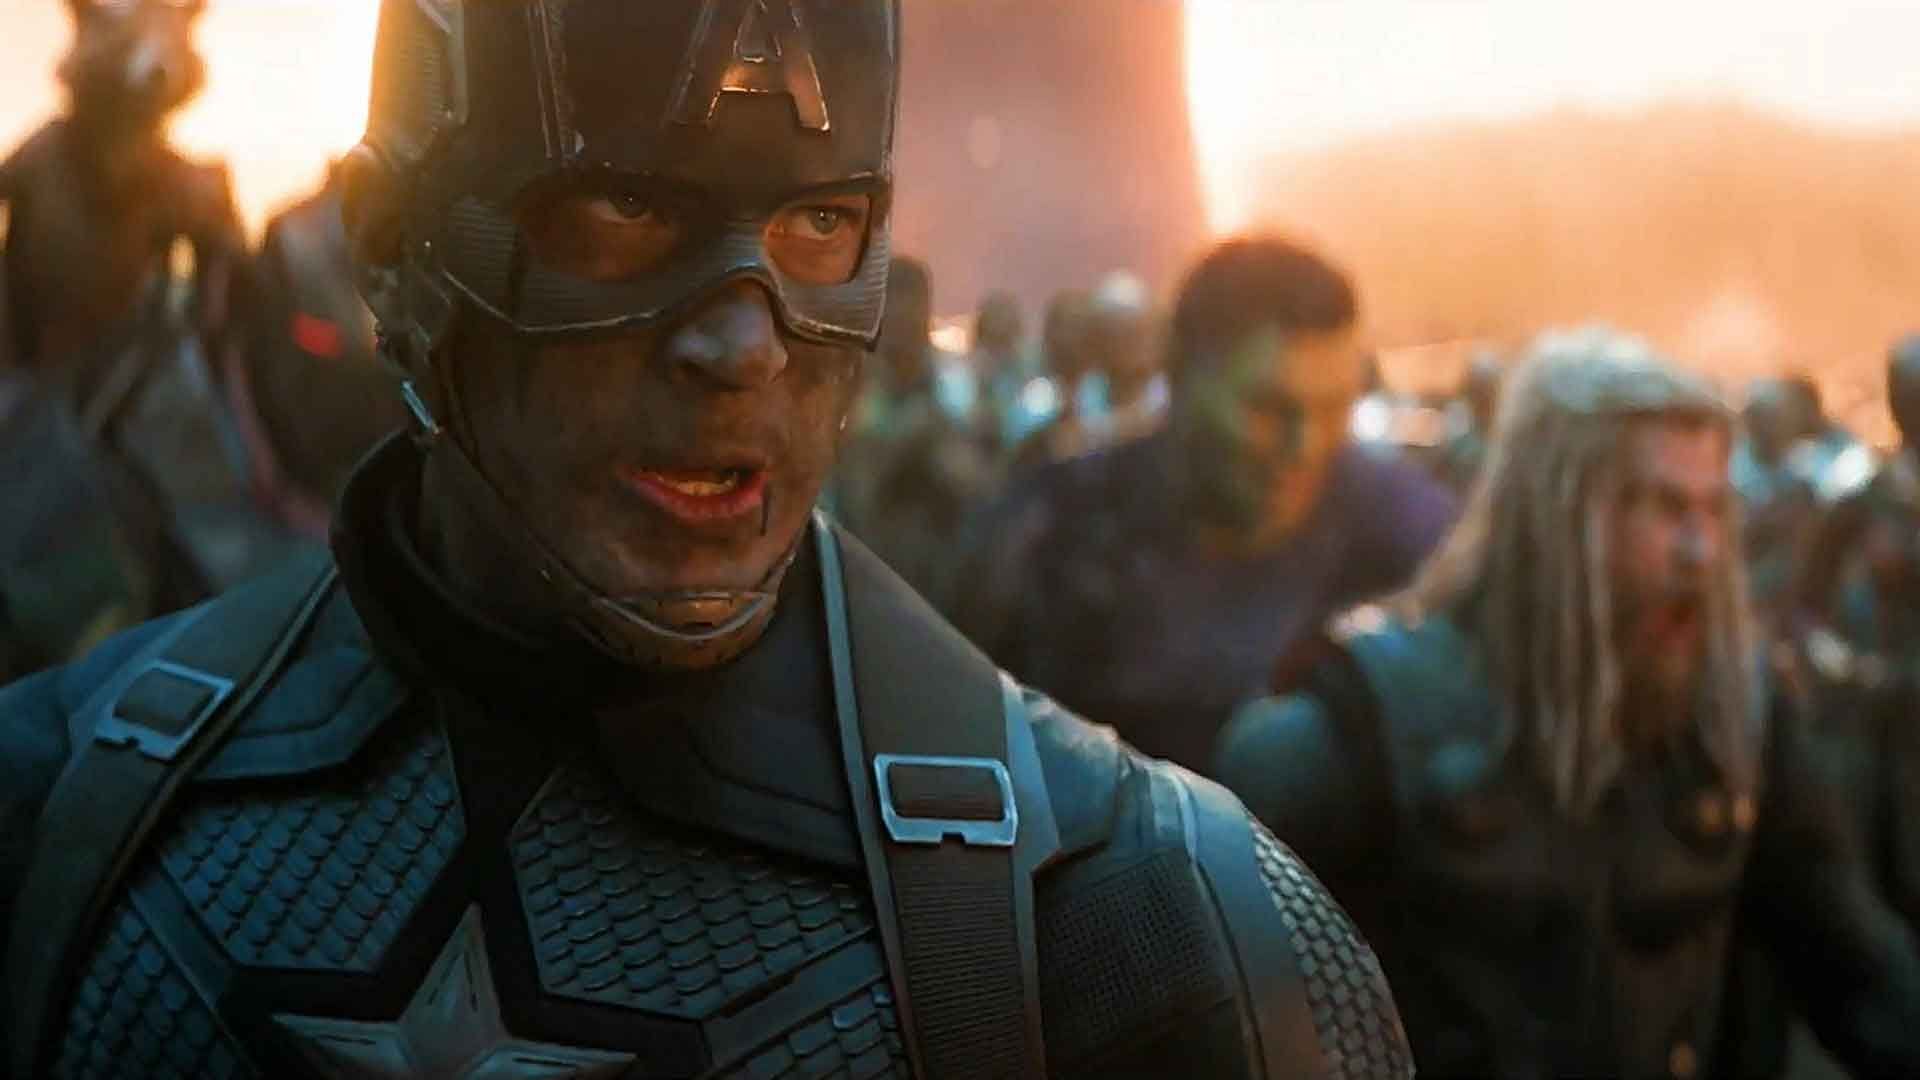 Captain America in Avengers: Endgame (Image via Marvel Studios)